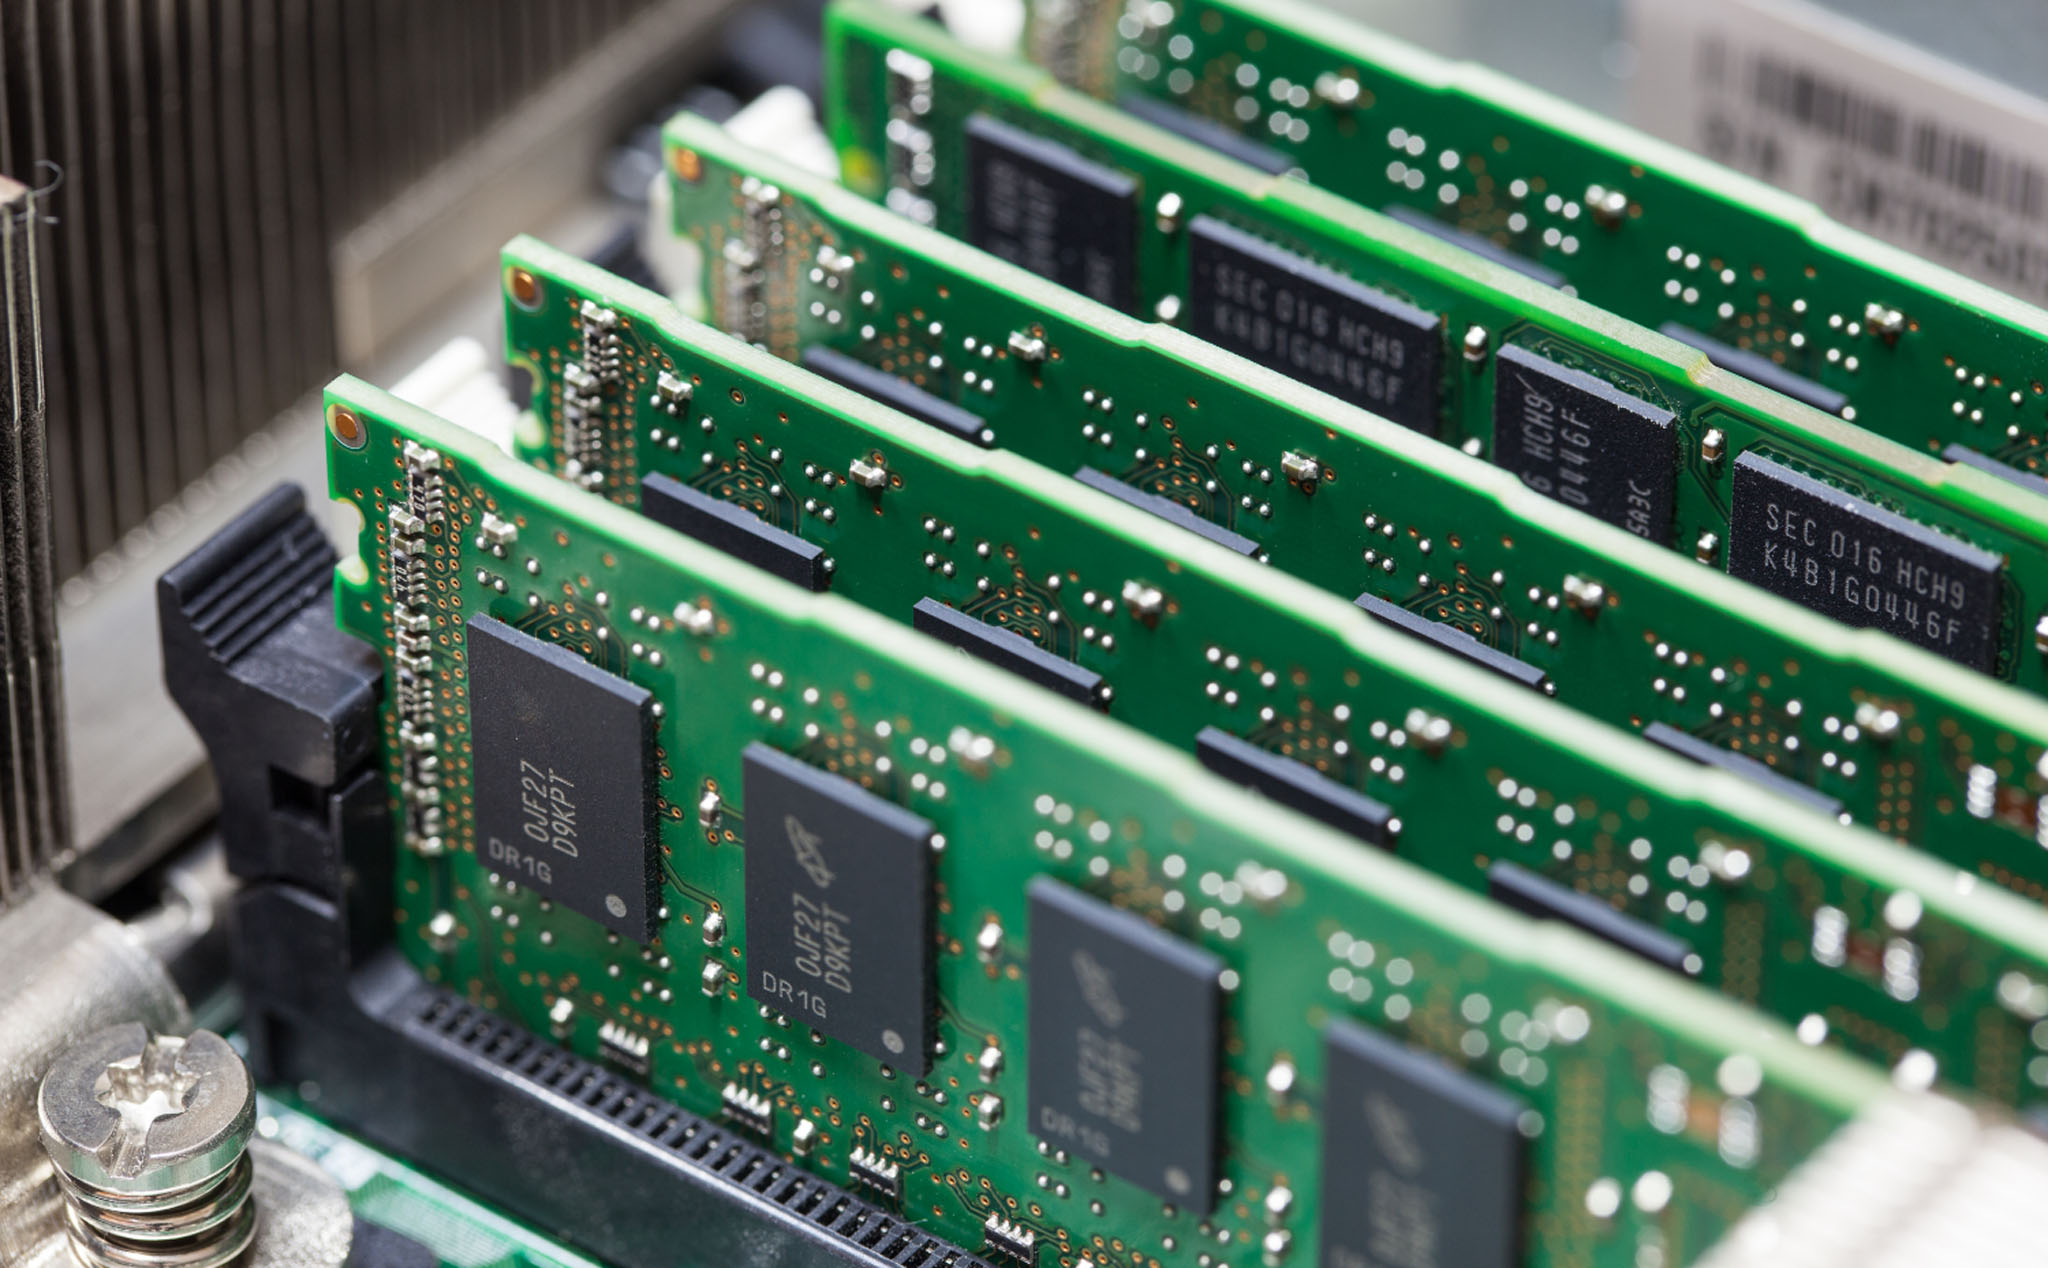 Trung Quốc bắt đầu sản xuất chip RAM quy mô lớn, Hàn Quốc và Mỹ sắp hết độc quyền